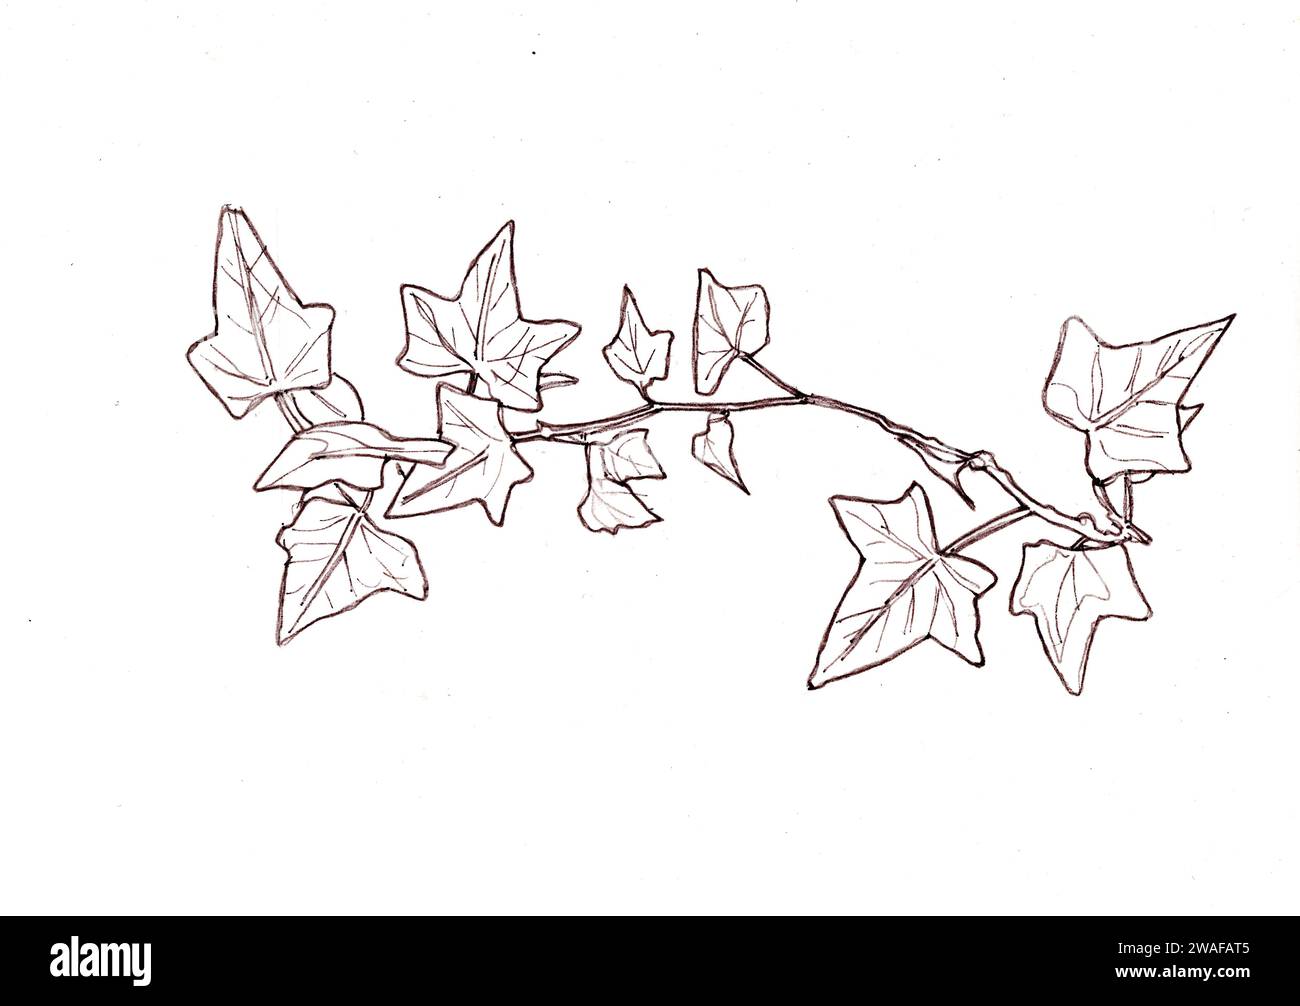 Illustrazione a linee bianche e nere di foglie di edera su sfondo bianco. Foto Stock